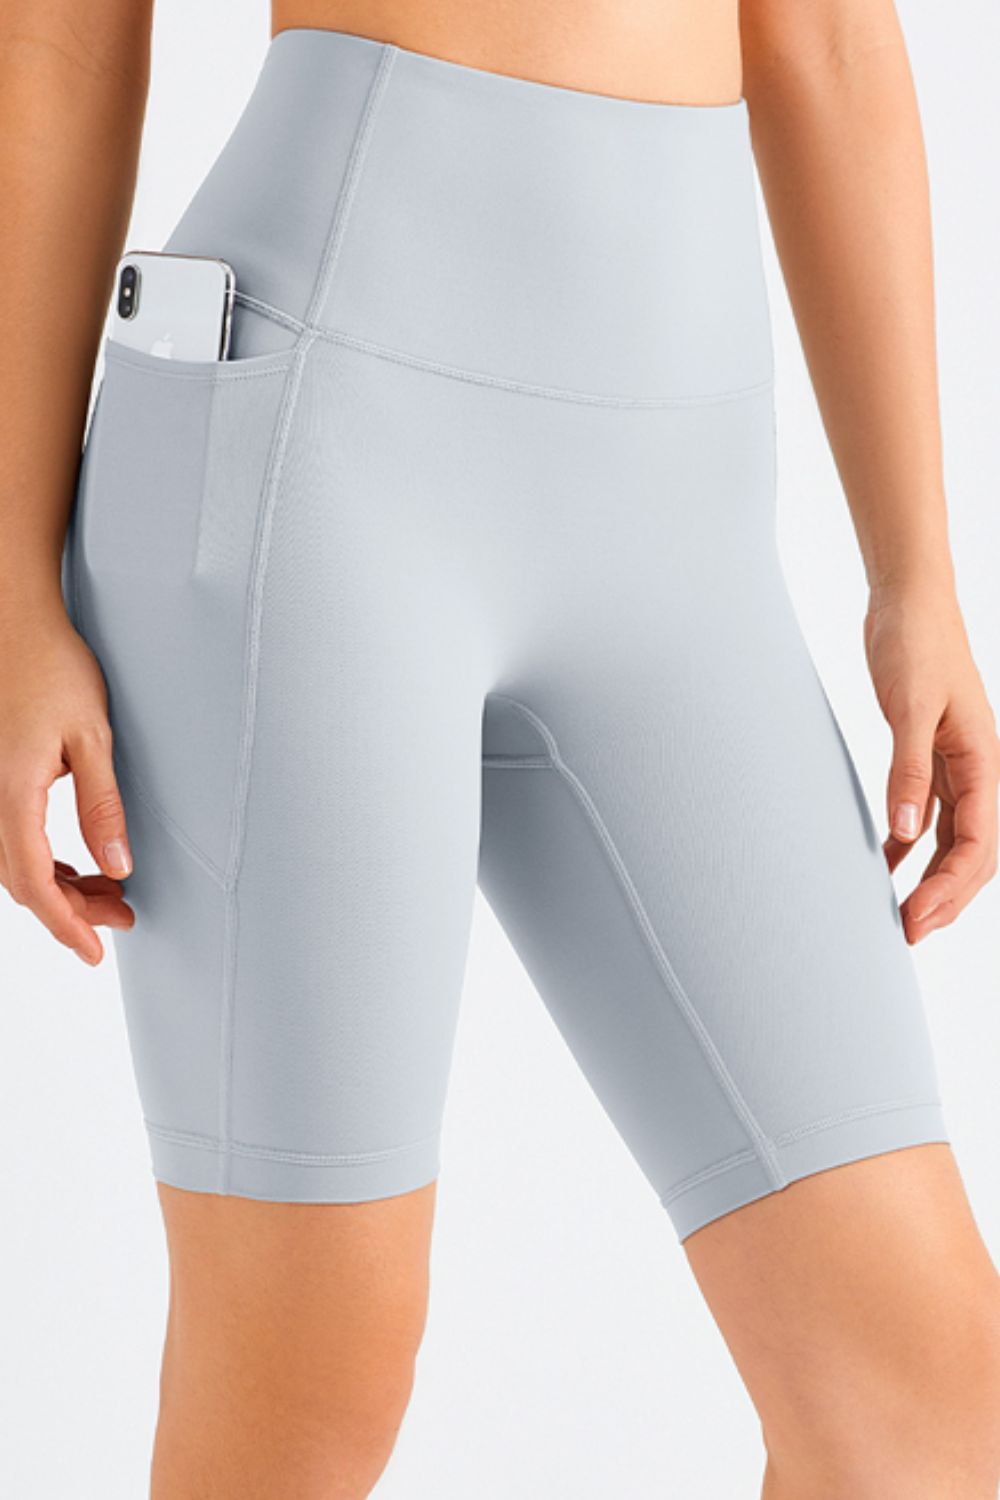 Elation Pocket Shorts - Lamoille Yoga